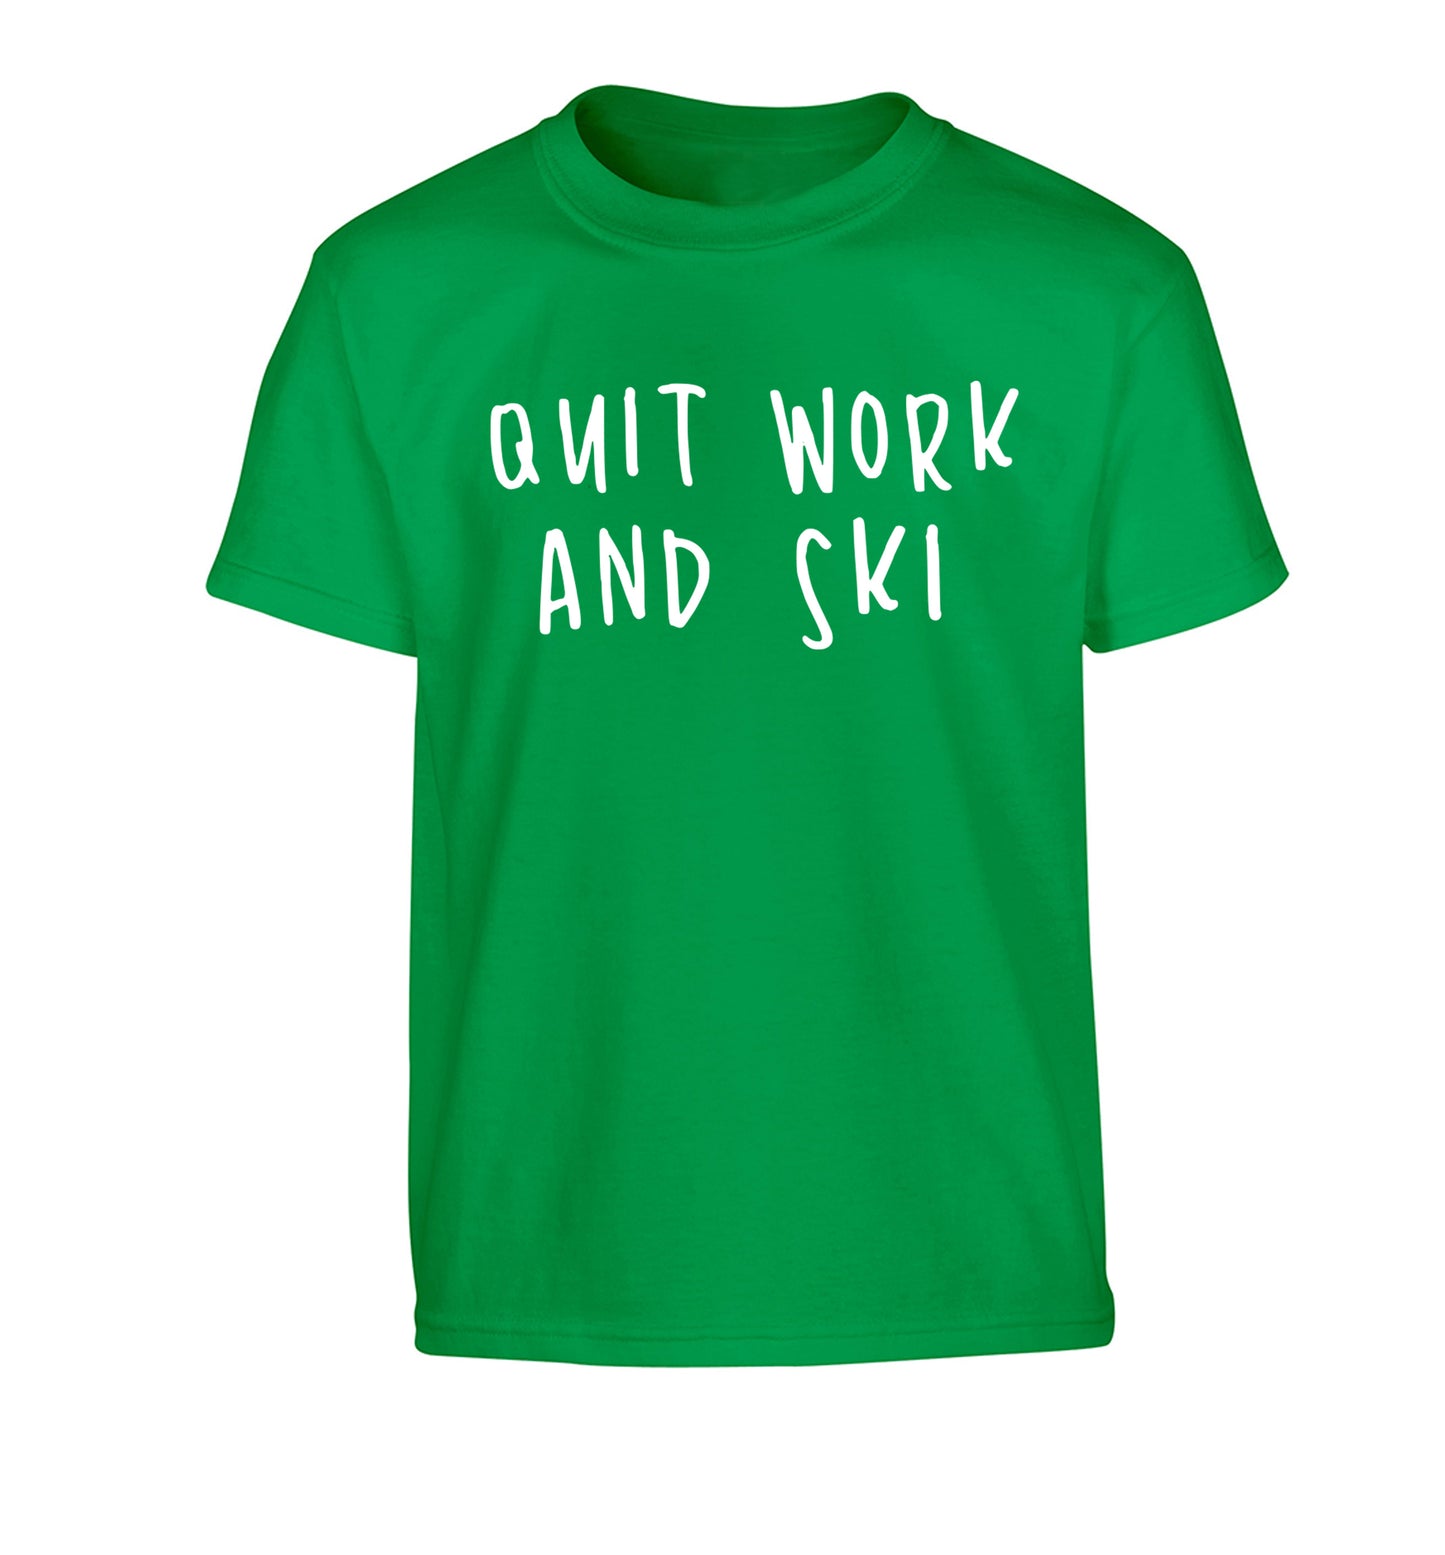 Quit work and ski Children's green Tshirt 12-14 Years